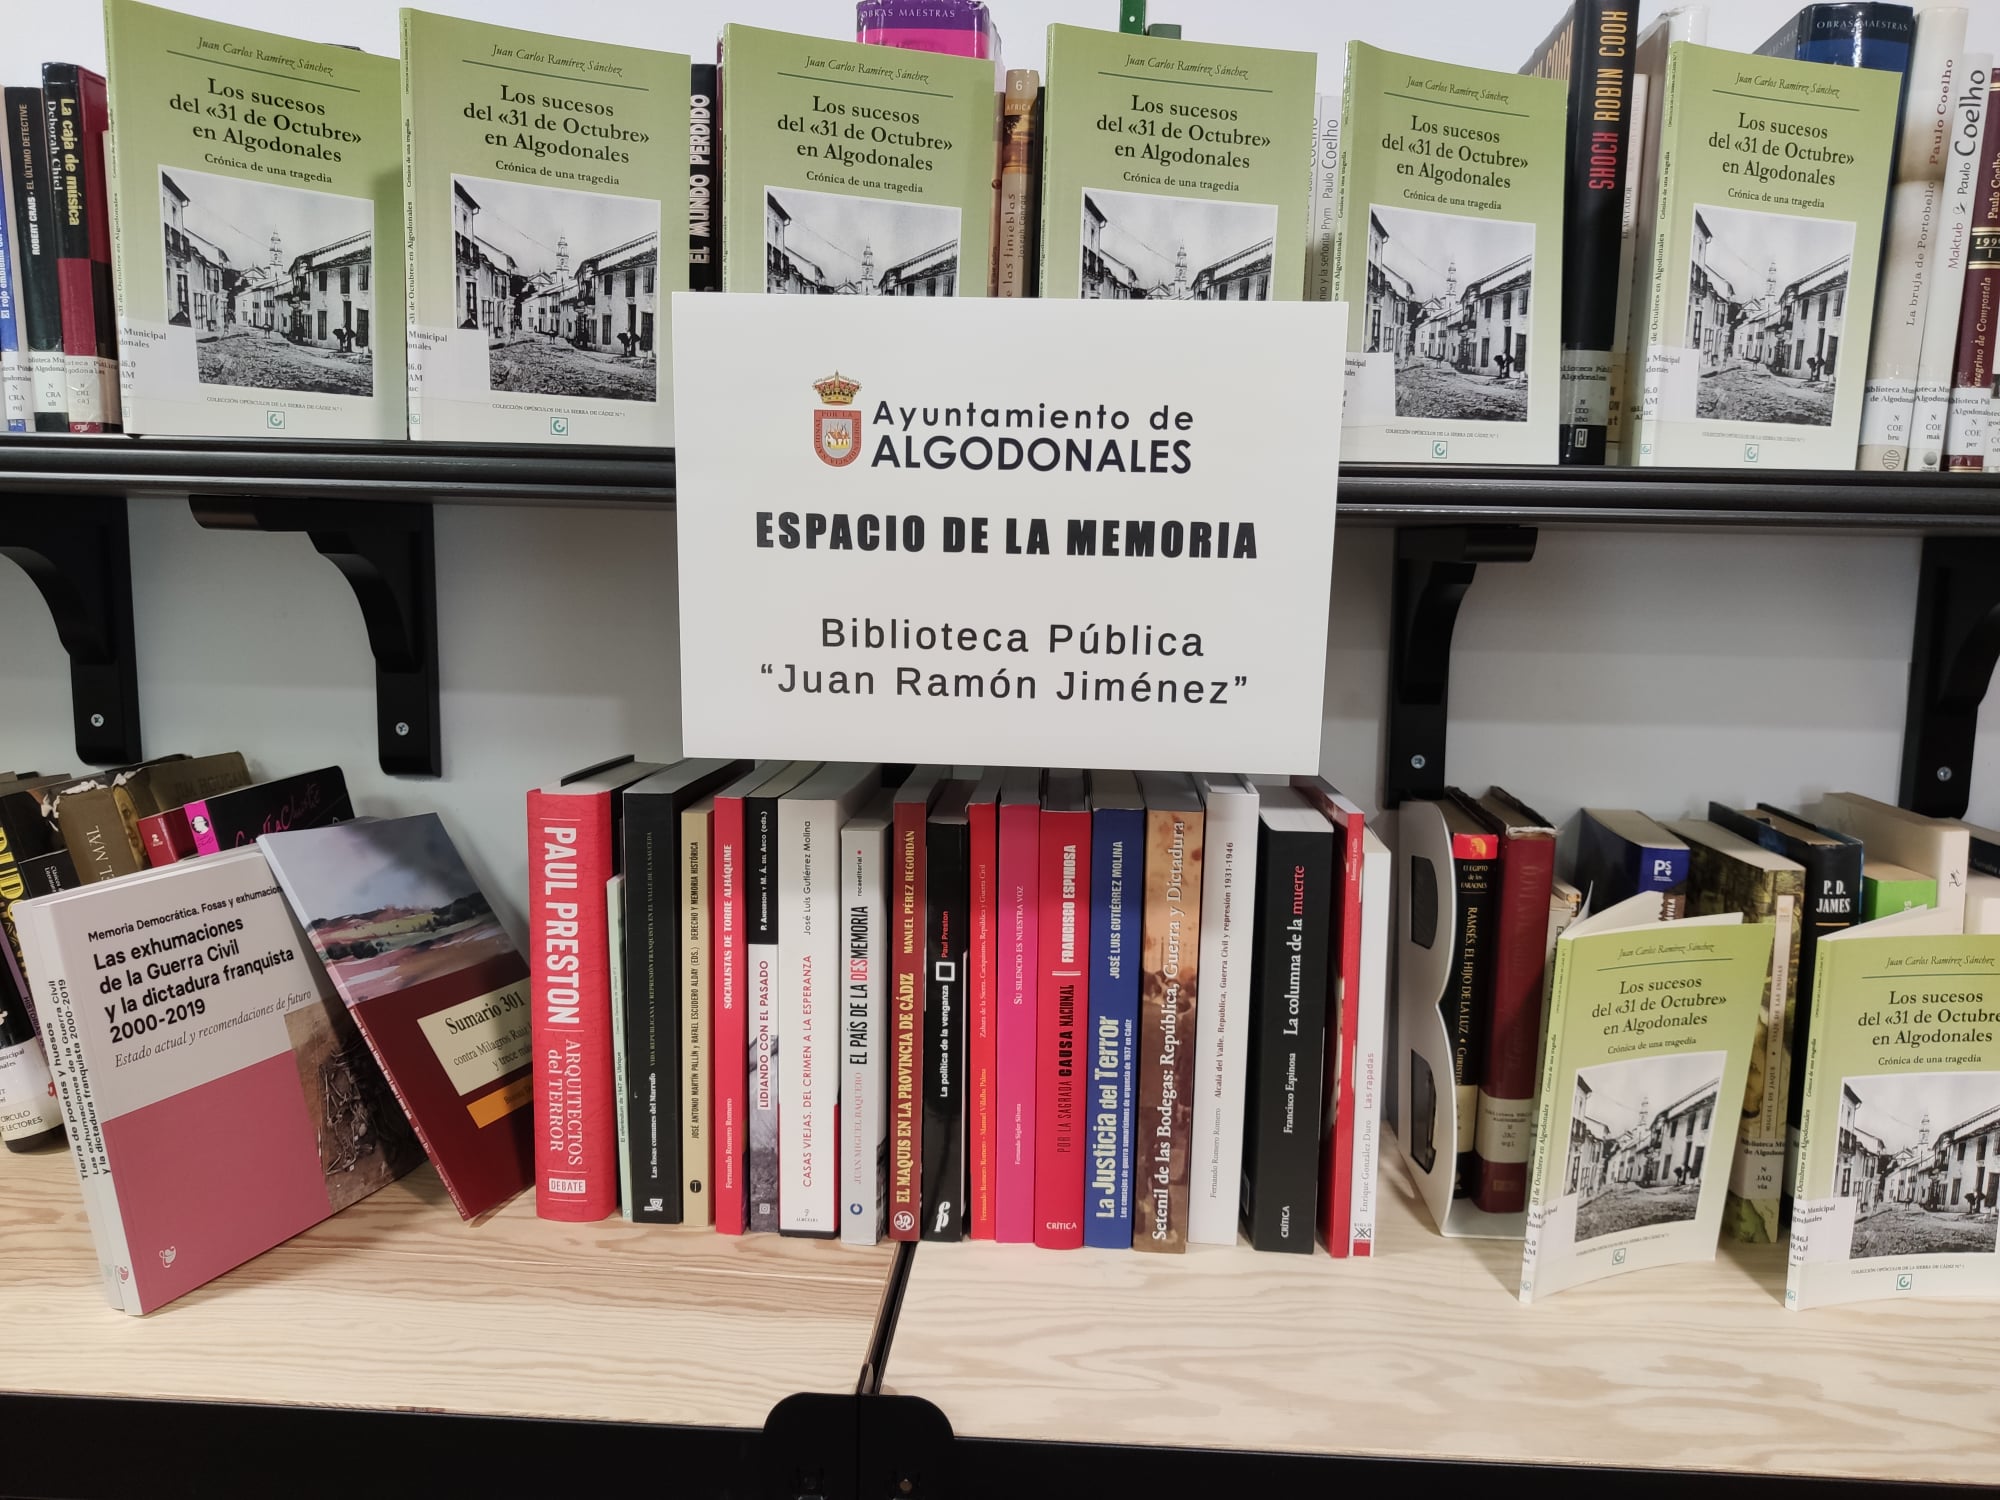 La biblioteca pública municipal de Algodonales, Juan Ramón Jiménez, ya dispone de un sector dedicado a la memoria